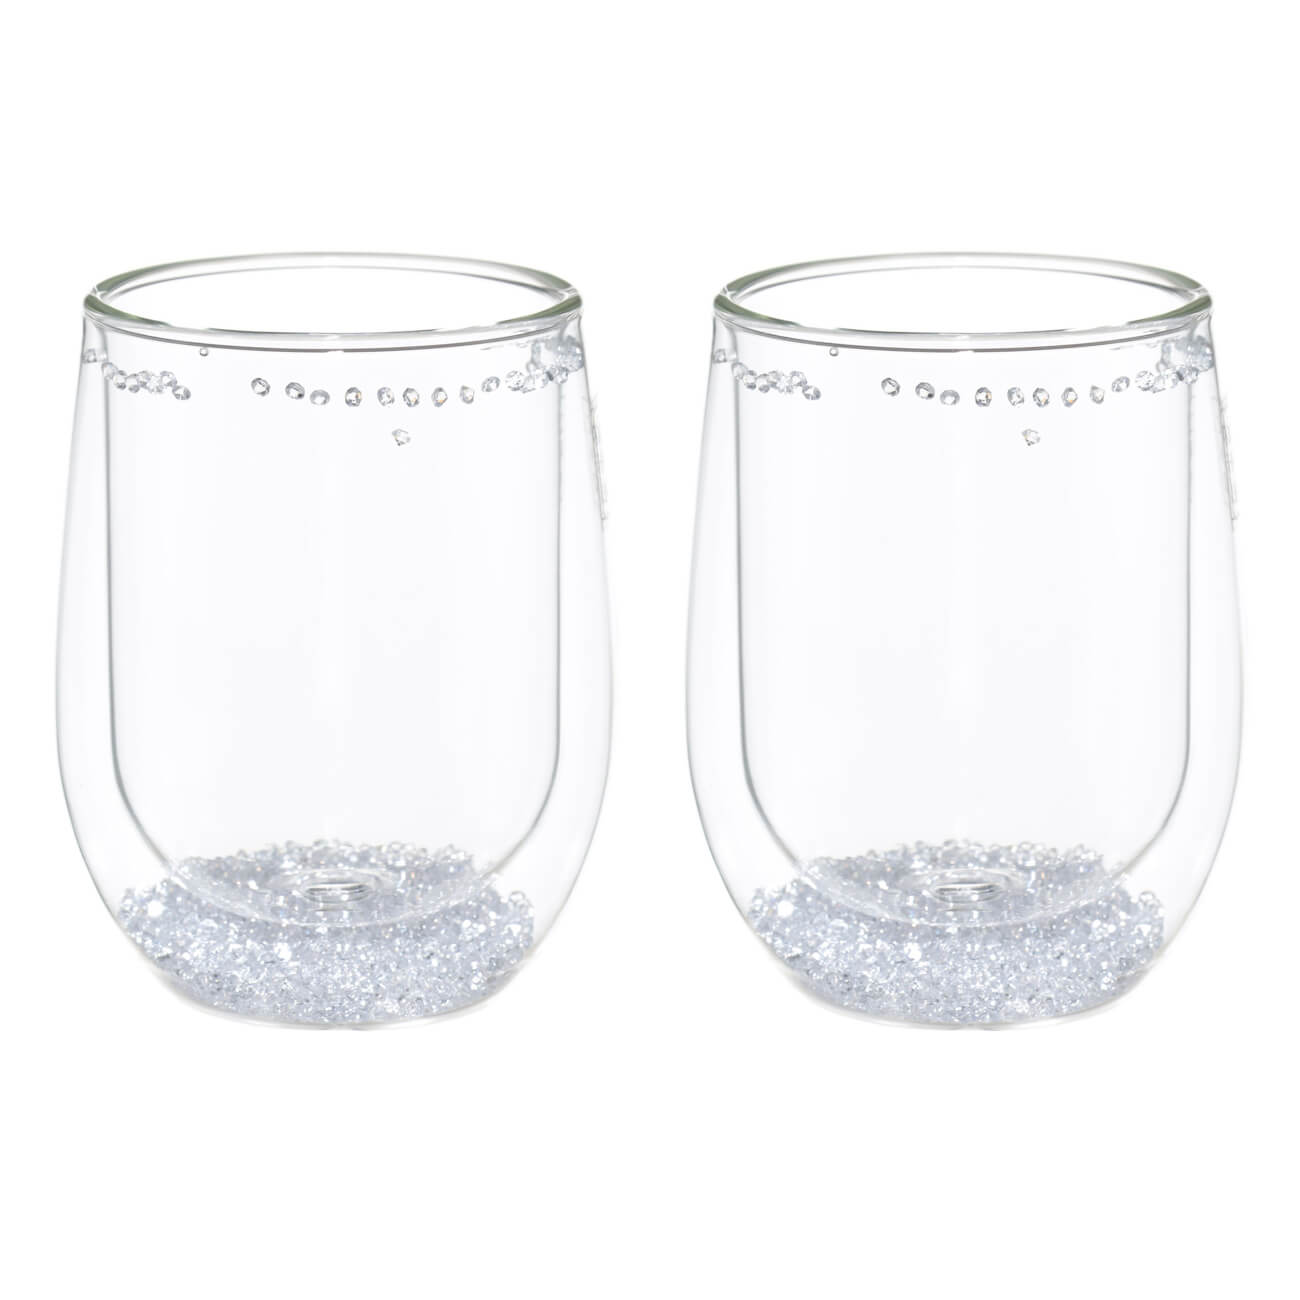 Стакан, 300 мл, 2 шт, стекло Б, с кристаллами внутри, Air decor стакан для горячих напитков phibo